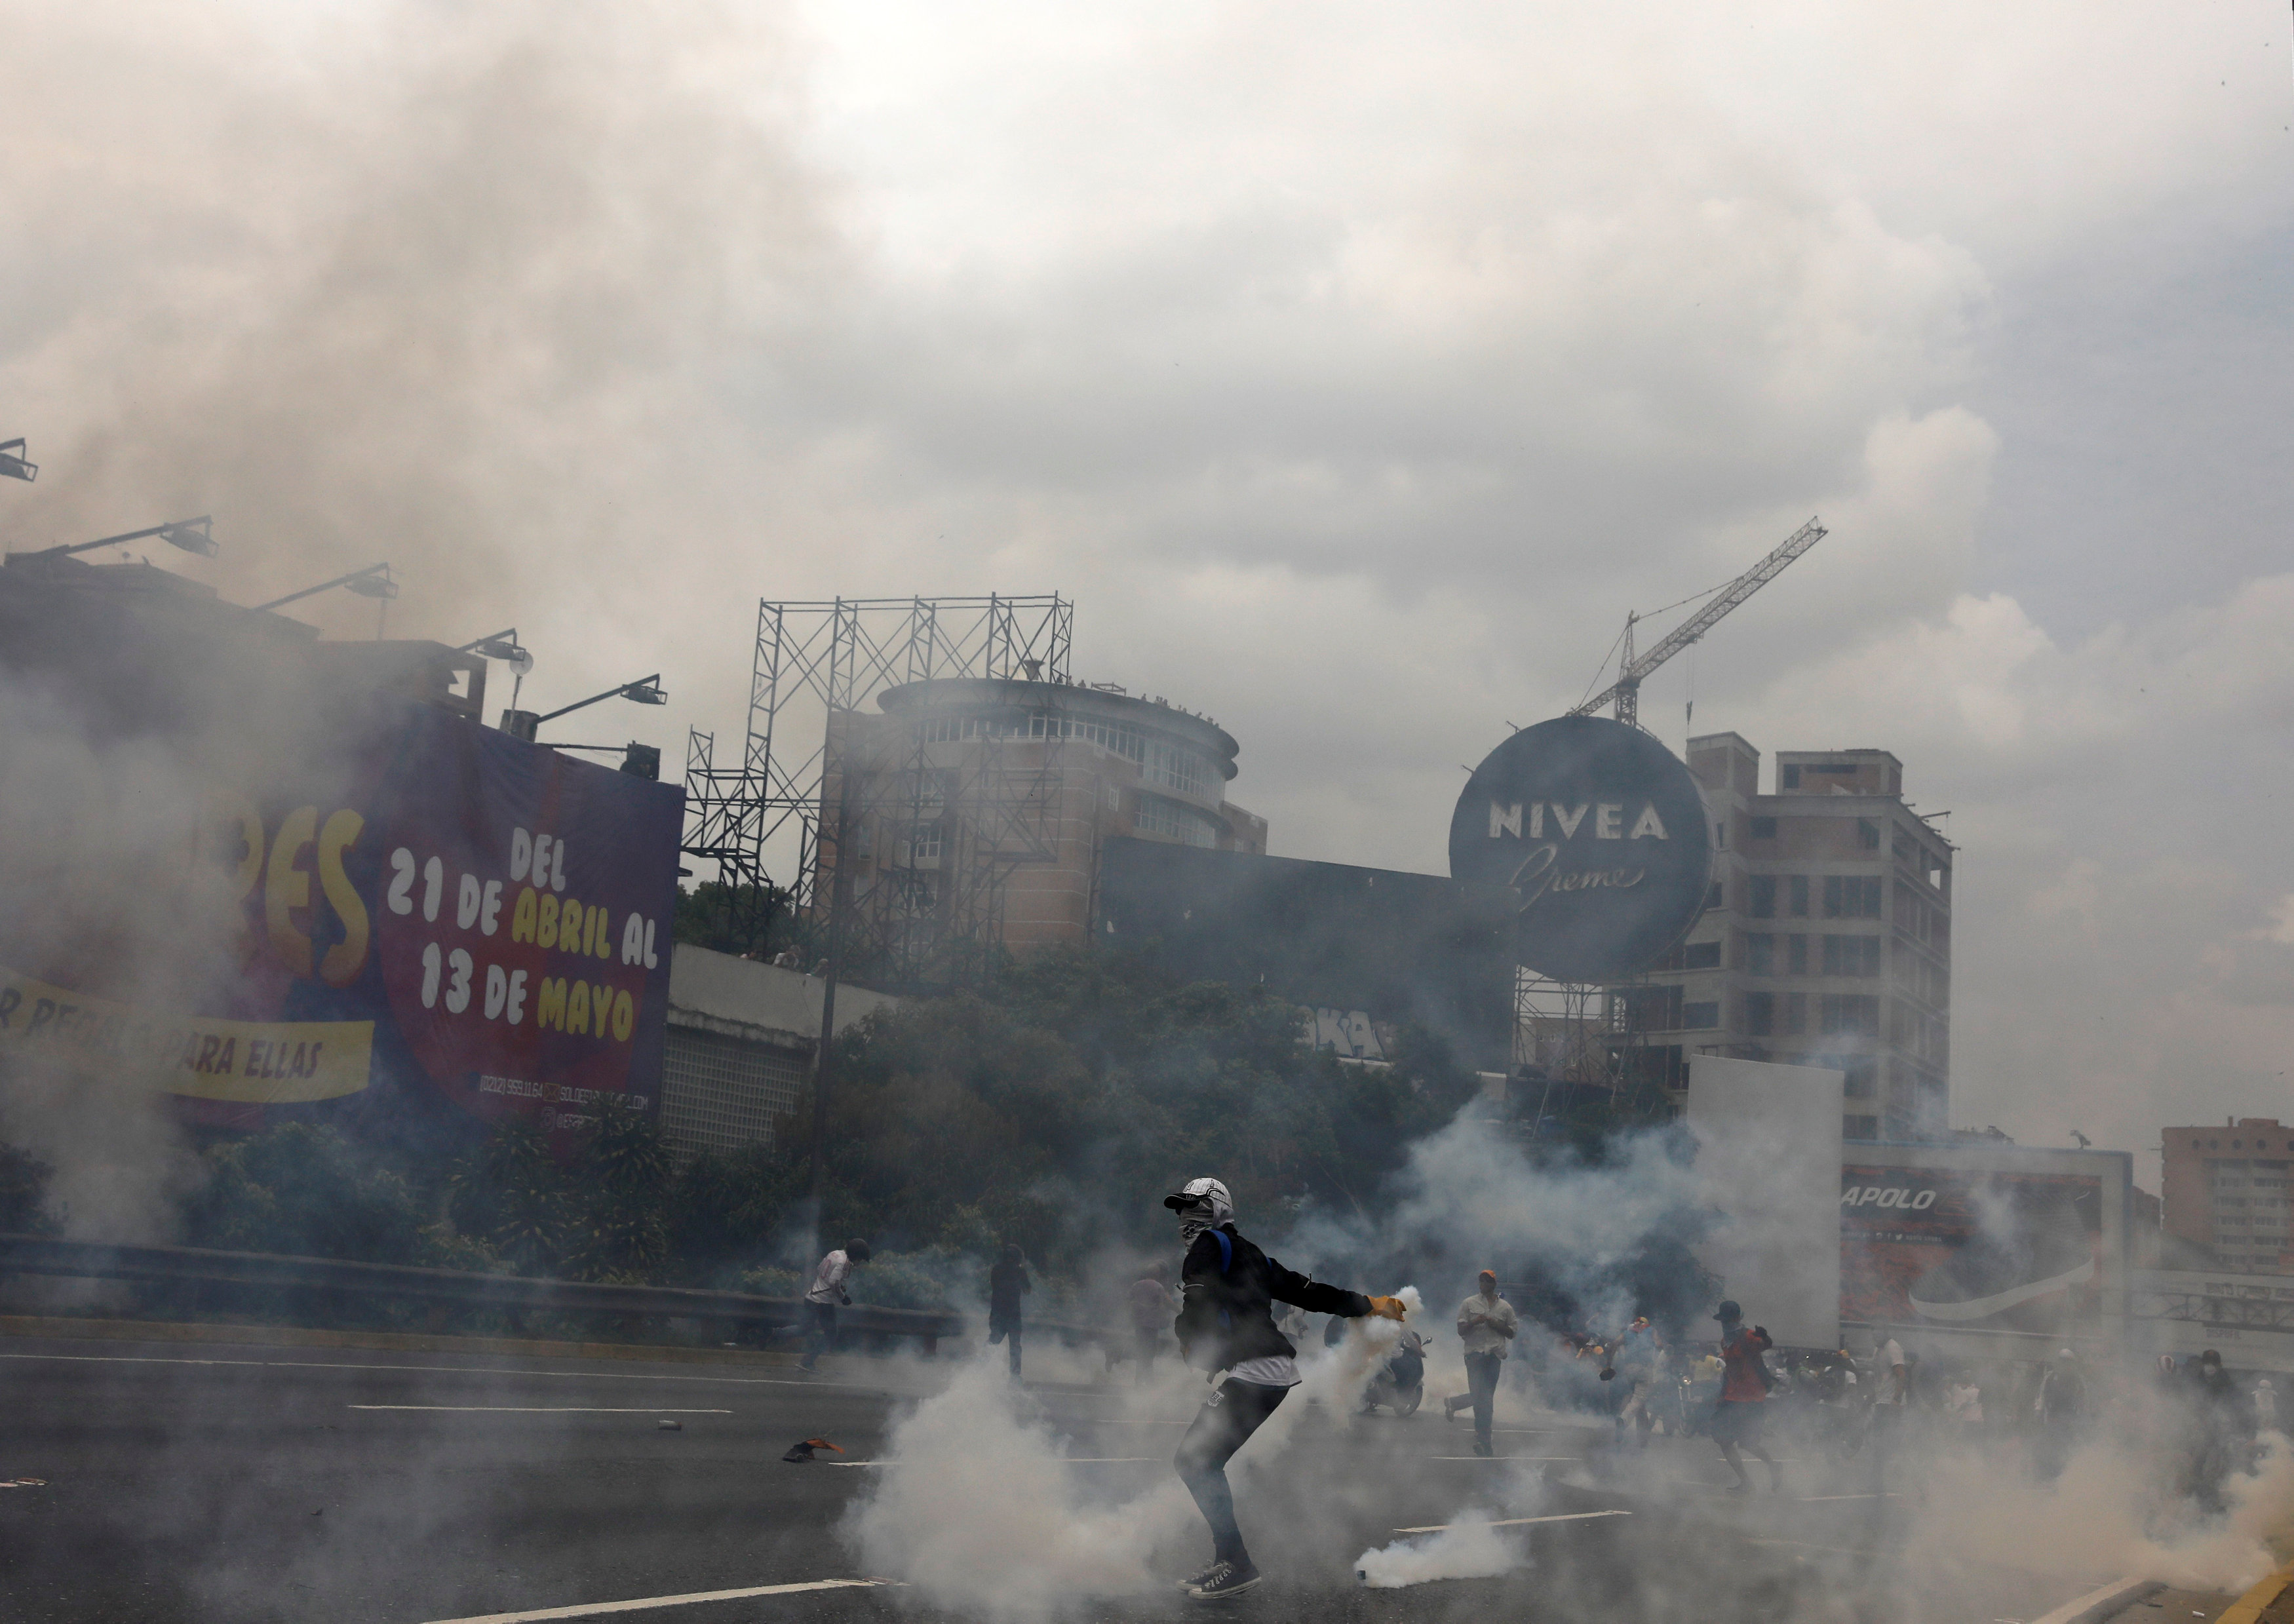 FOTOS que dan la vuelta al mundo: Protesta, represión, resistencia y vehemencia ante el desastre “revolucionario”